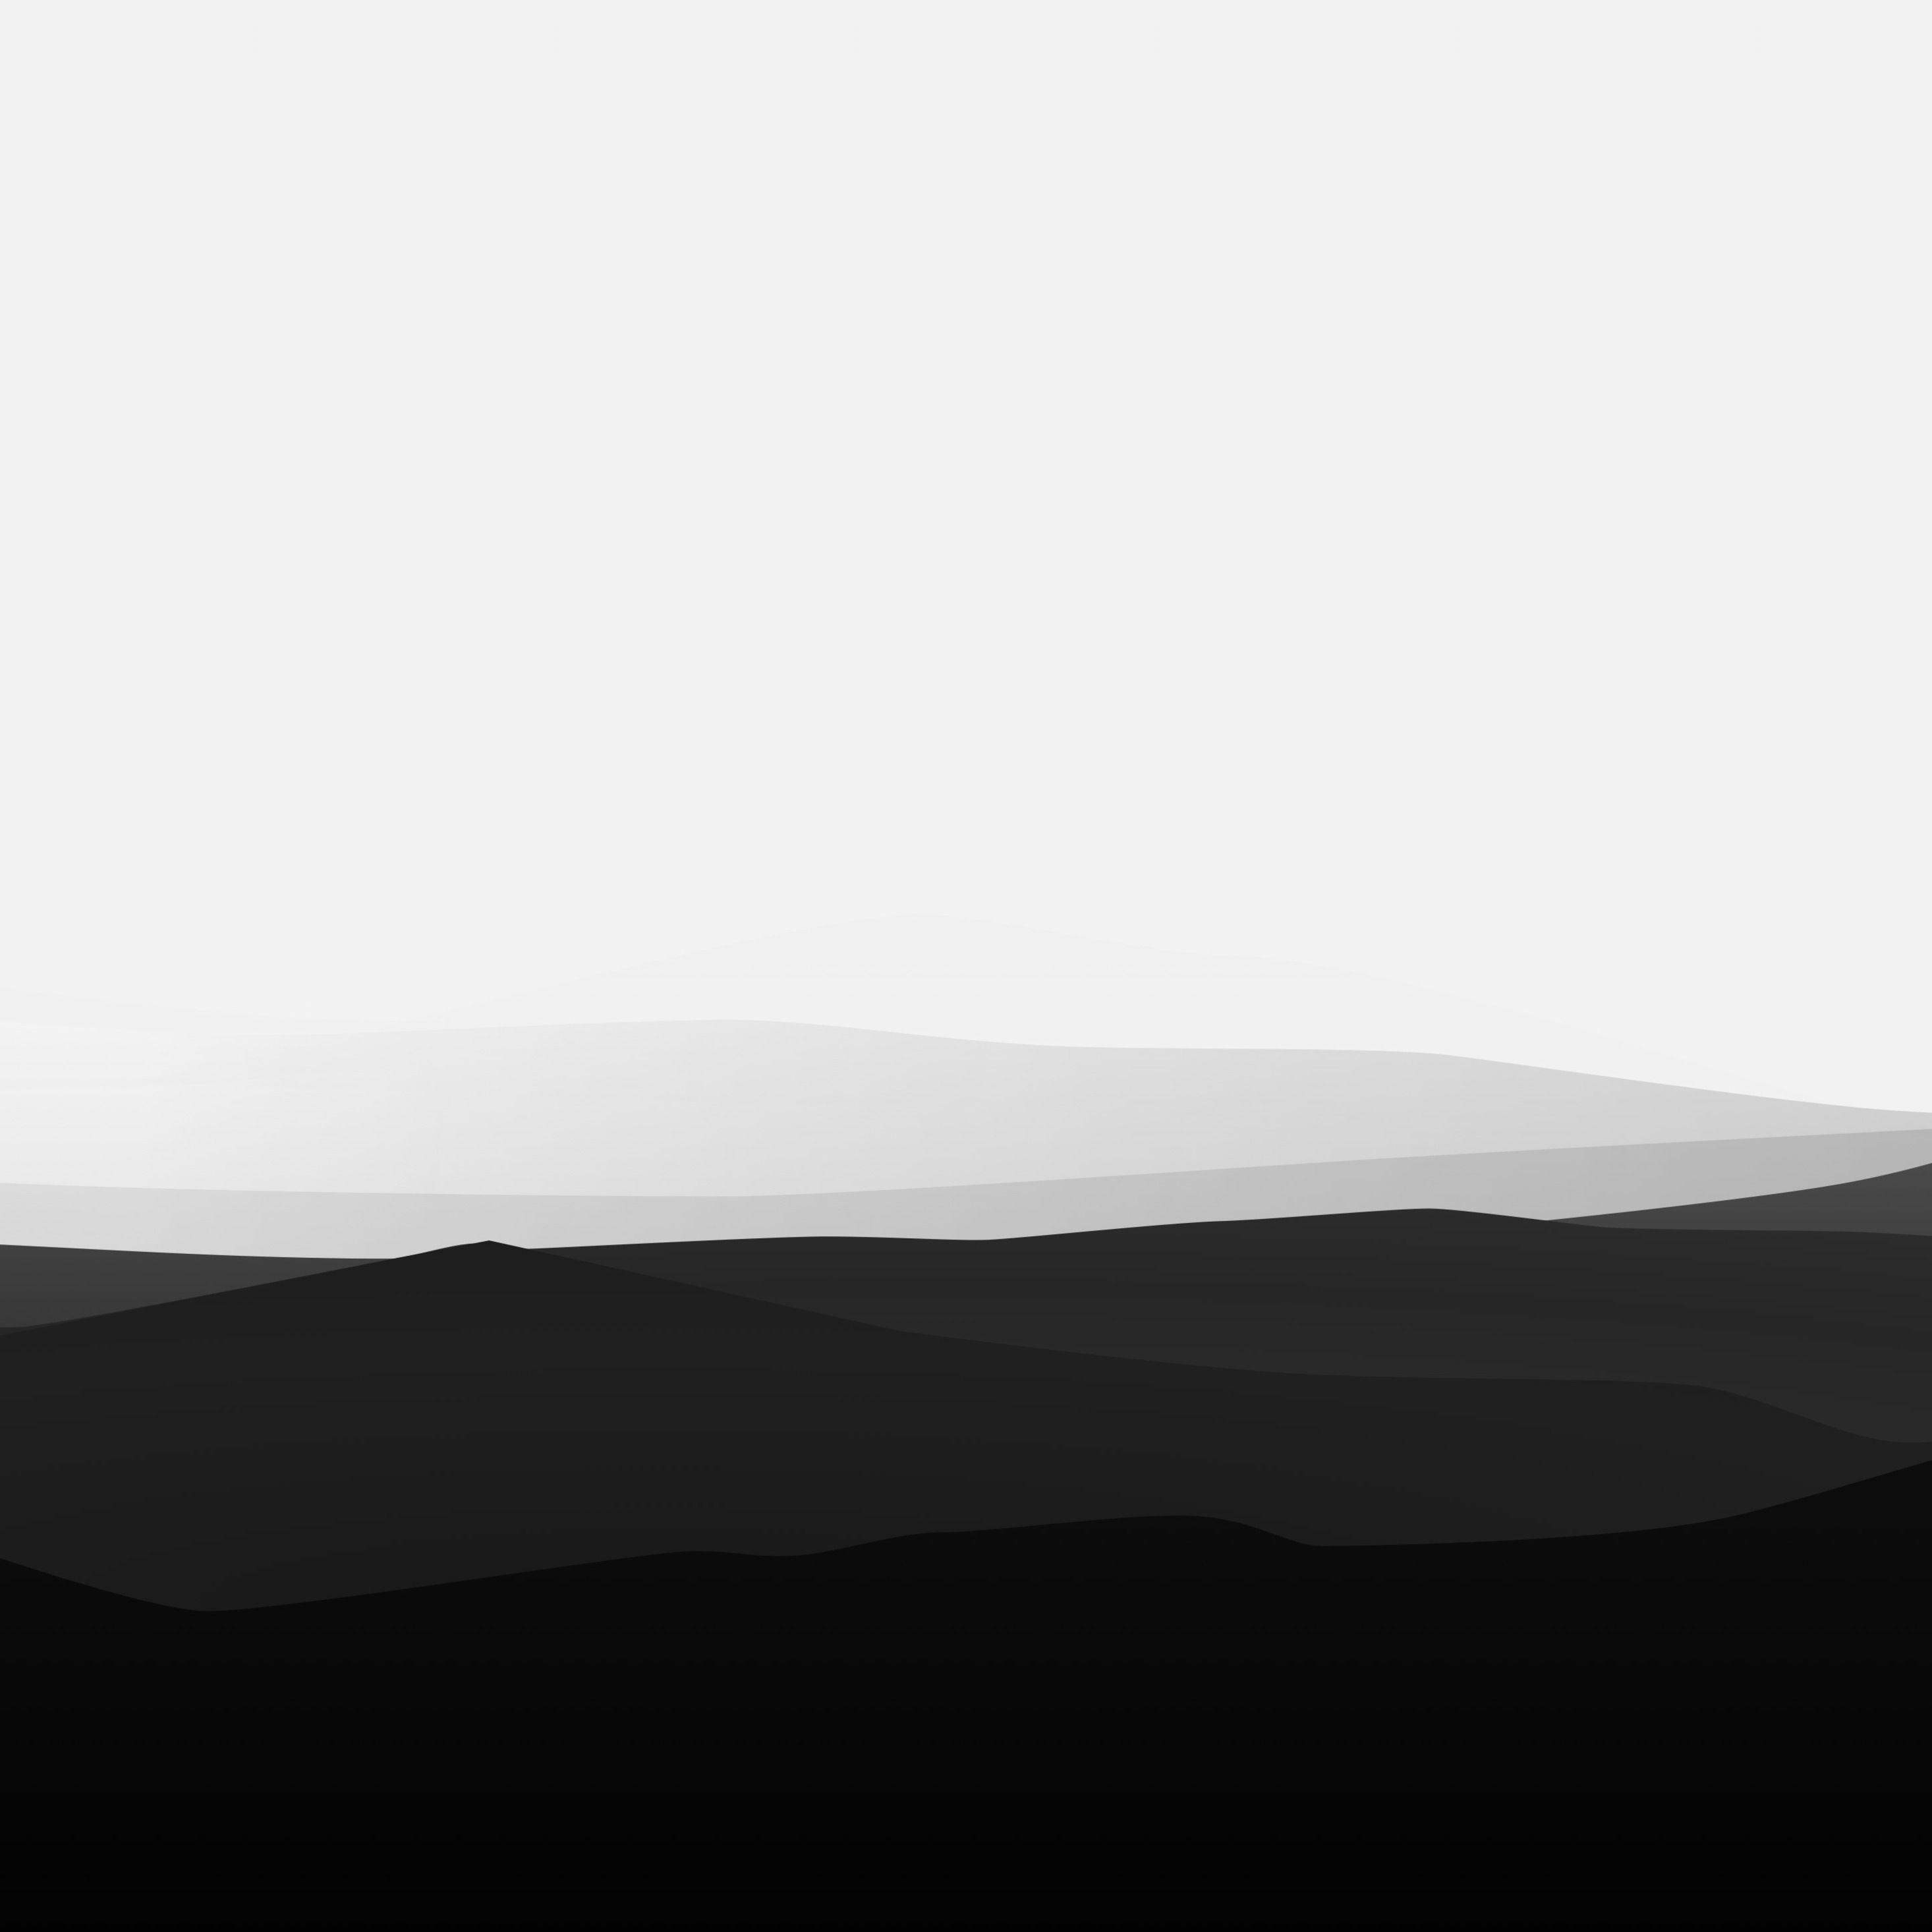 minimalistisches ipad wallpaper,schwarz,weiß,himmel,horizont,hügel